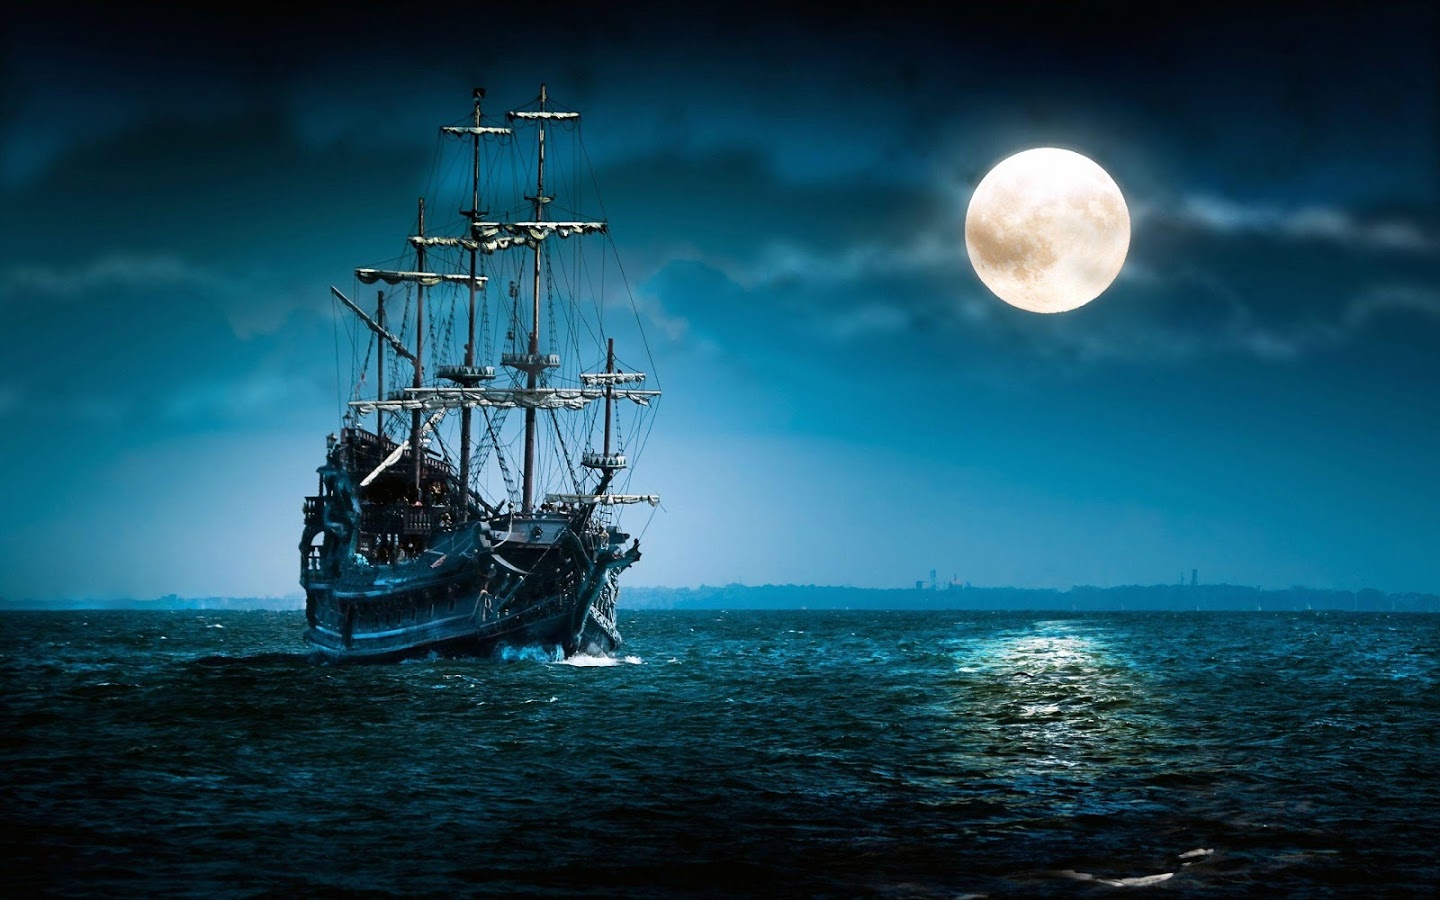 Trong lịch sử ngành hàng hải, Flying Dutchman (Người Hà Lan bay) là con tàu ma gây ảnh hưởng sâu rộng nhất, truyền cảm hứng cho vô số tác phẩm nghệ thuật, hội họa, phim ảnh, sách, nhạc kịch, thơ ca. Truyền thuyết về con tàu ma bắt nguồn từ năm 1641, khi thuyền trưởng Van der Decken cùng thủy thủ đoàn đang trên đường trở về Hà Lan sau chuyến viễn đông thuận lợi. 